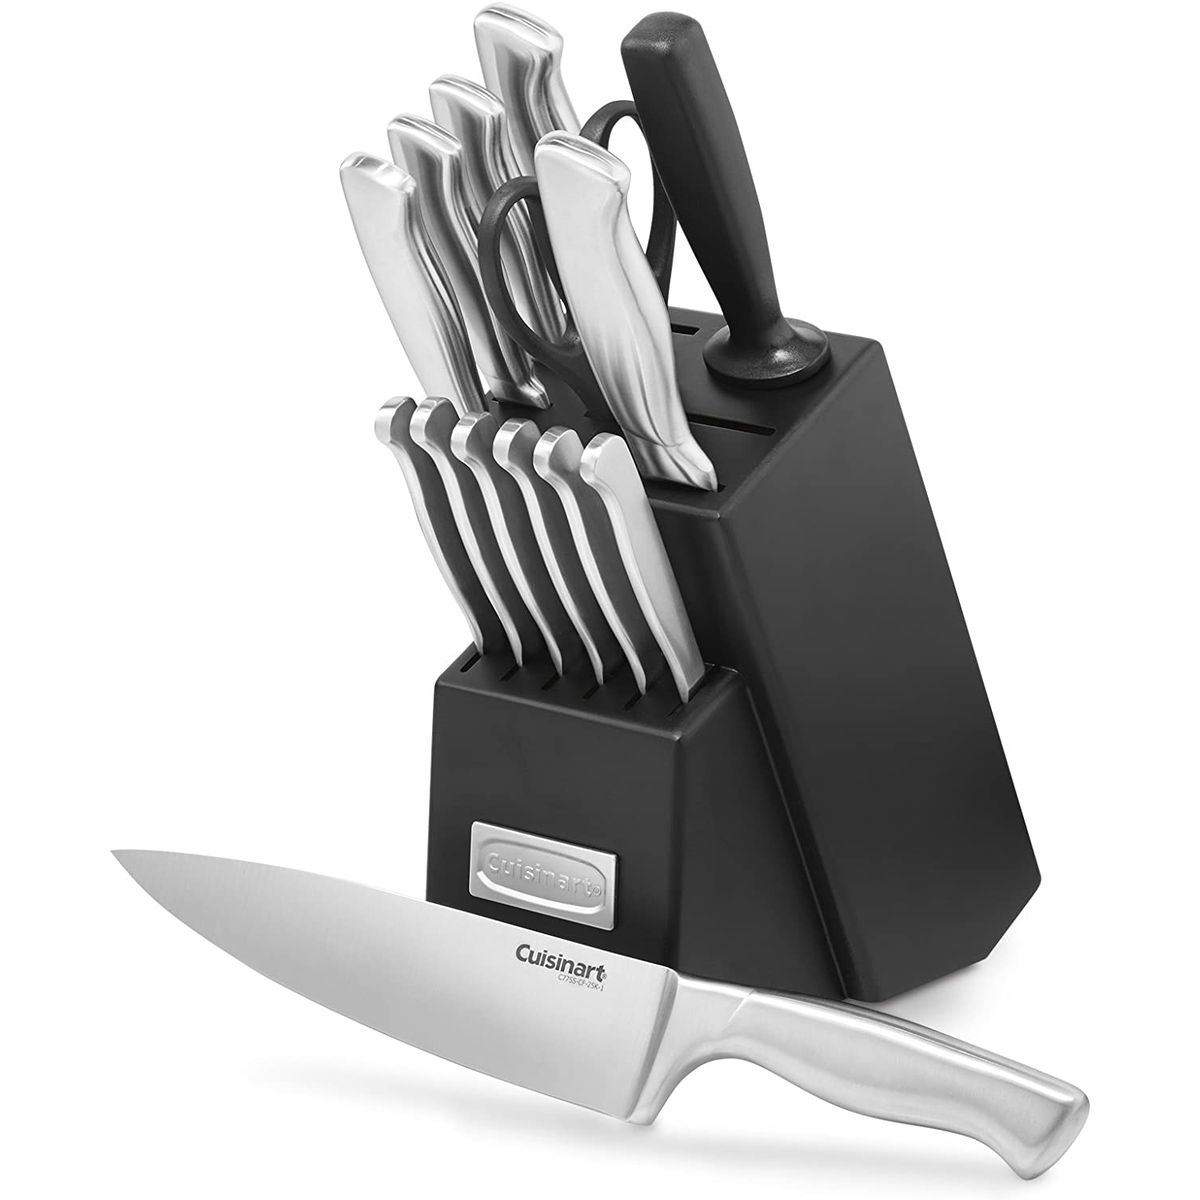 knife sets